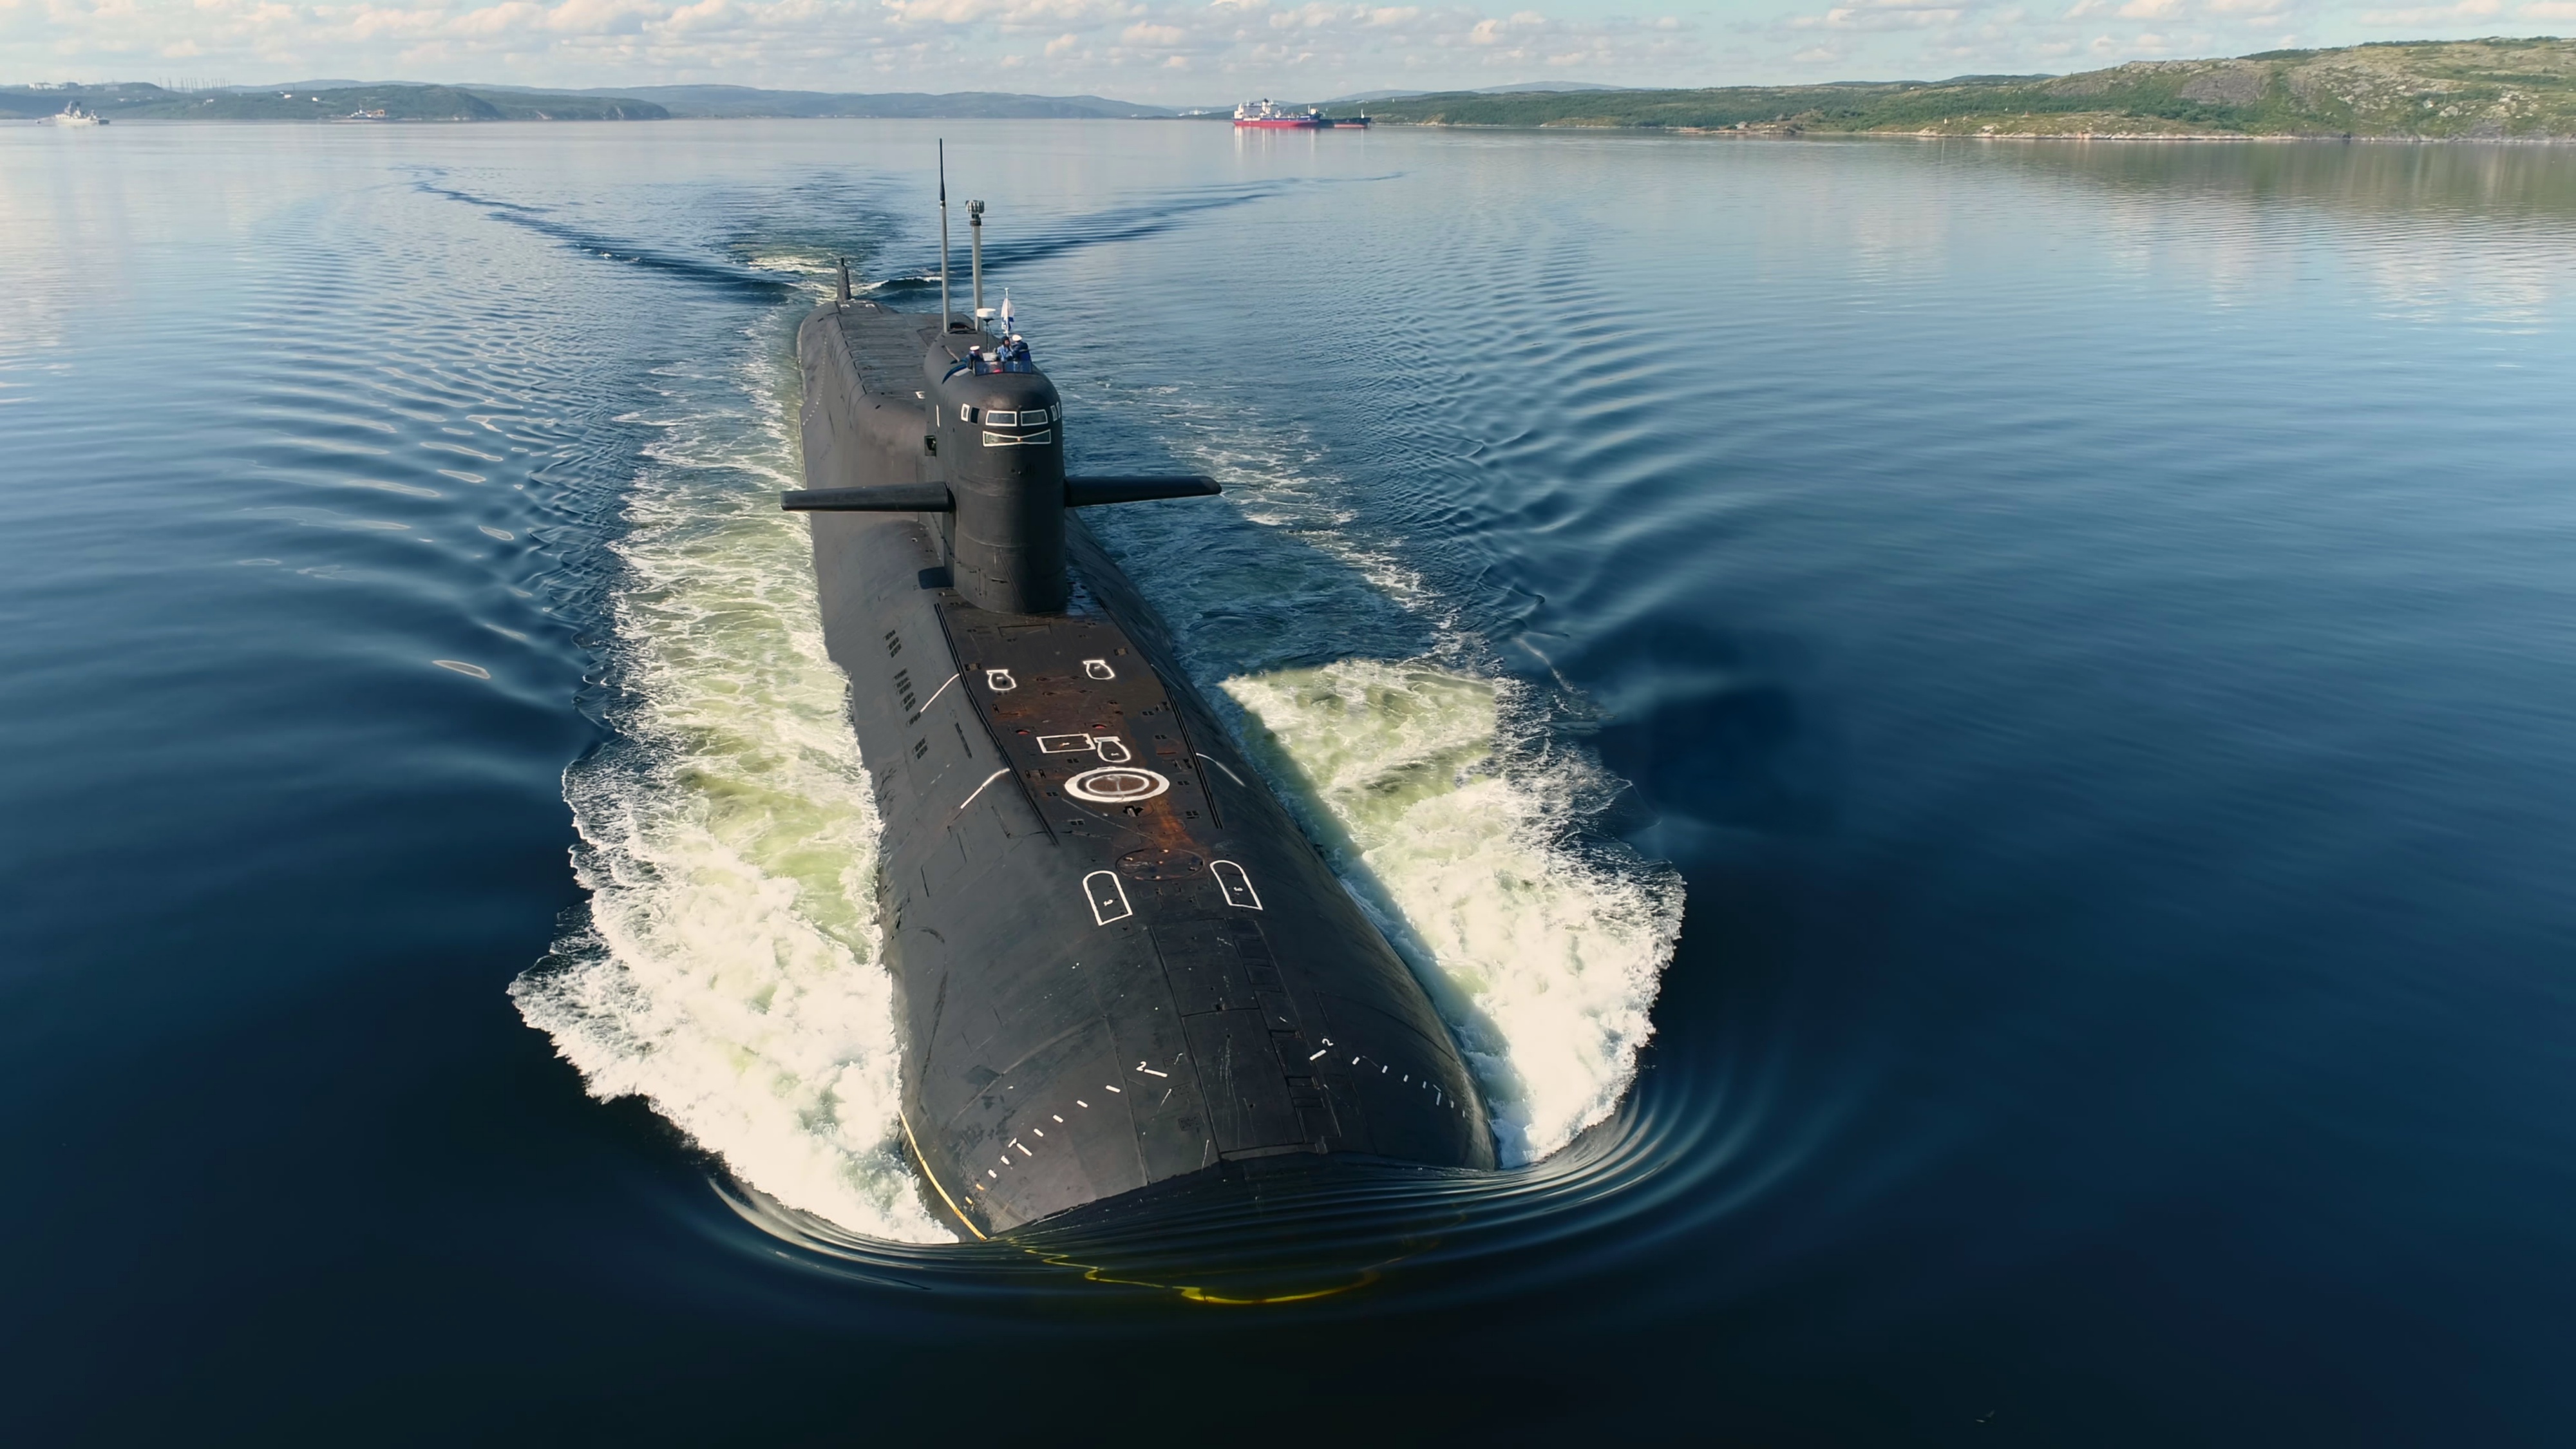 Апл подводные лодки. Подводная лодка 667бдрм "Дельфин". 667 БДРМ подводная лодка. К-114 "Тула" проекта 667бдрм "Дельфин". Подводная лодка к-114 Тула.